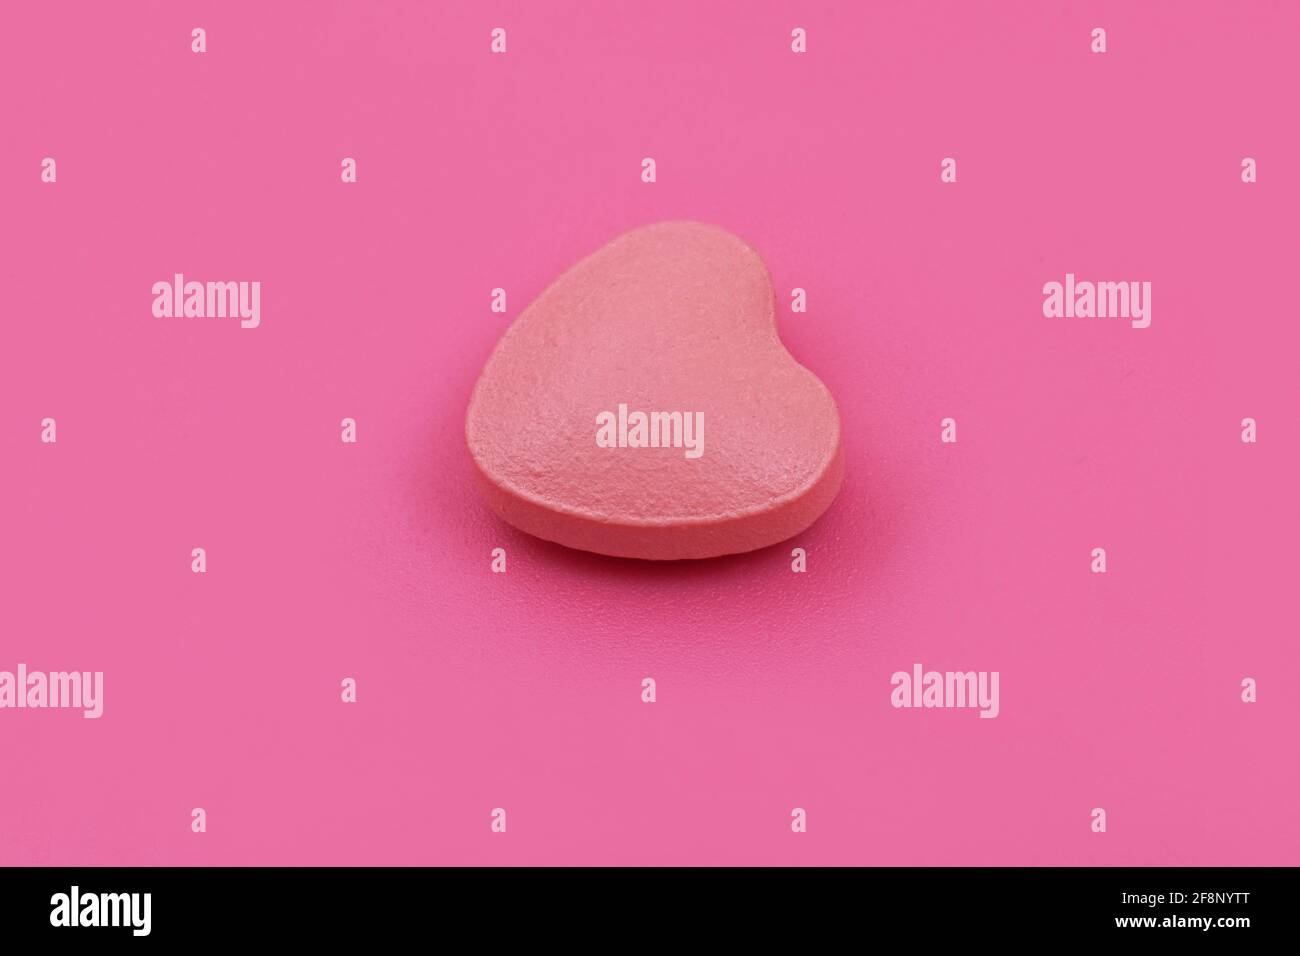 Herzform Pharmazeutische Medizin Tablette auf rosa Hintergrund, flache Lay Copy Raum Medizin Konzepte Baby rosa Farbe Hintergrund Stockfoto